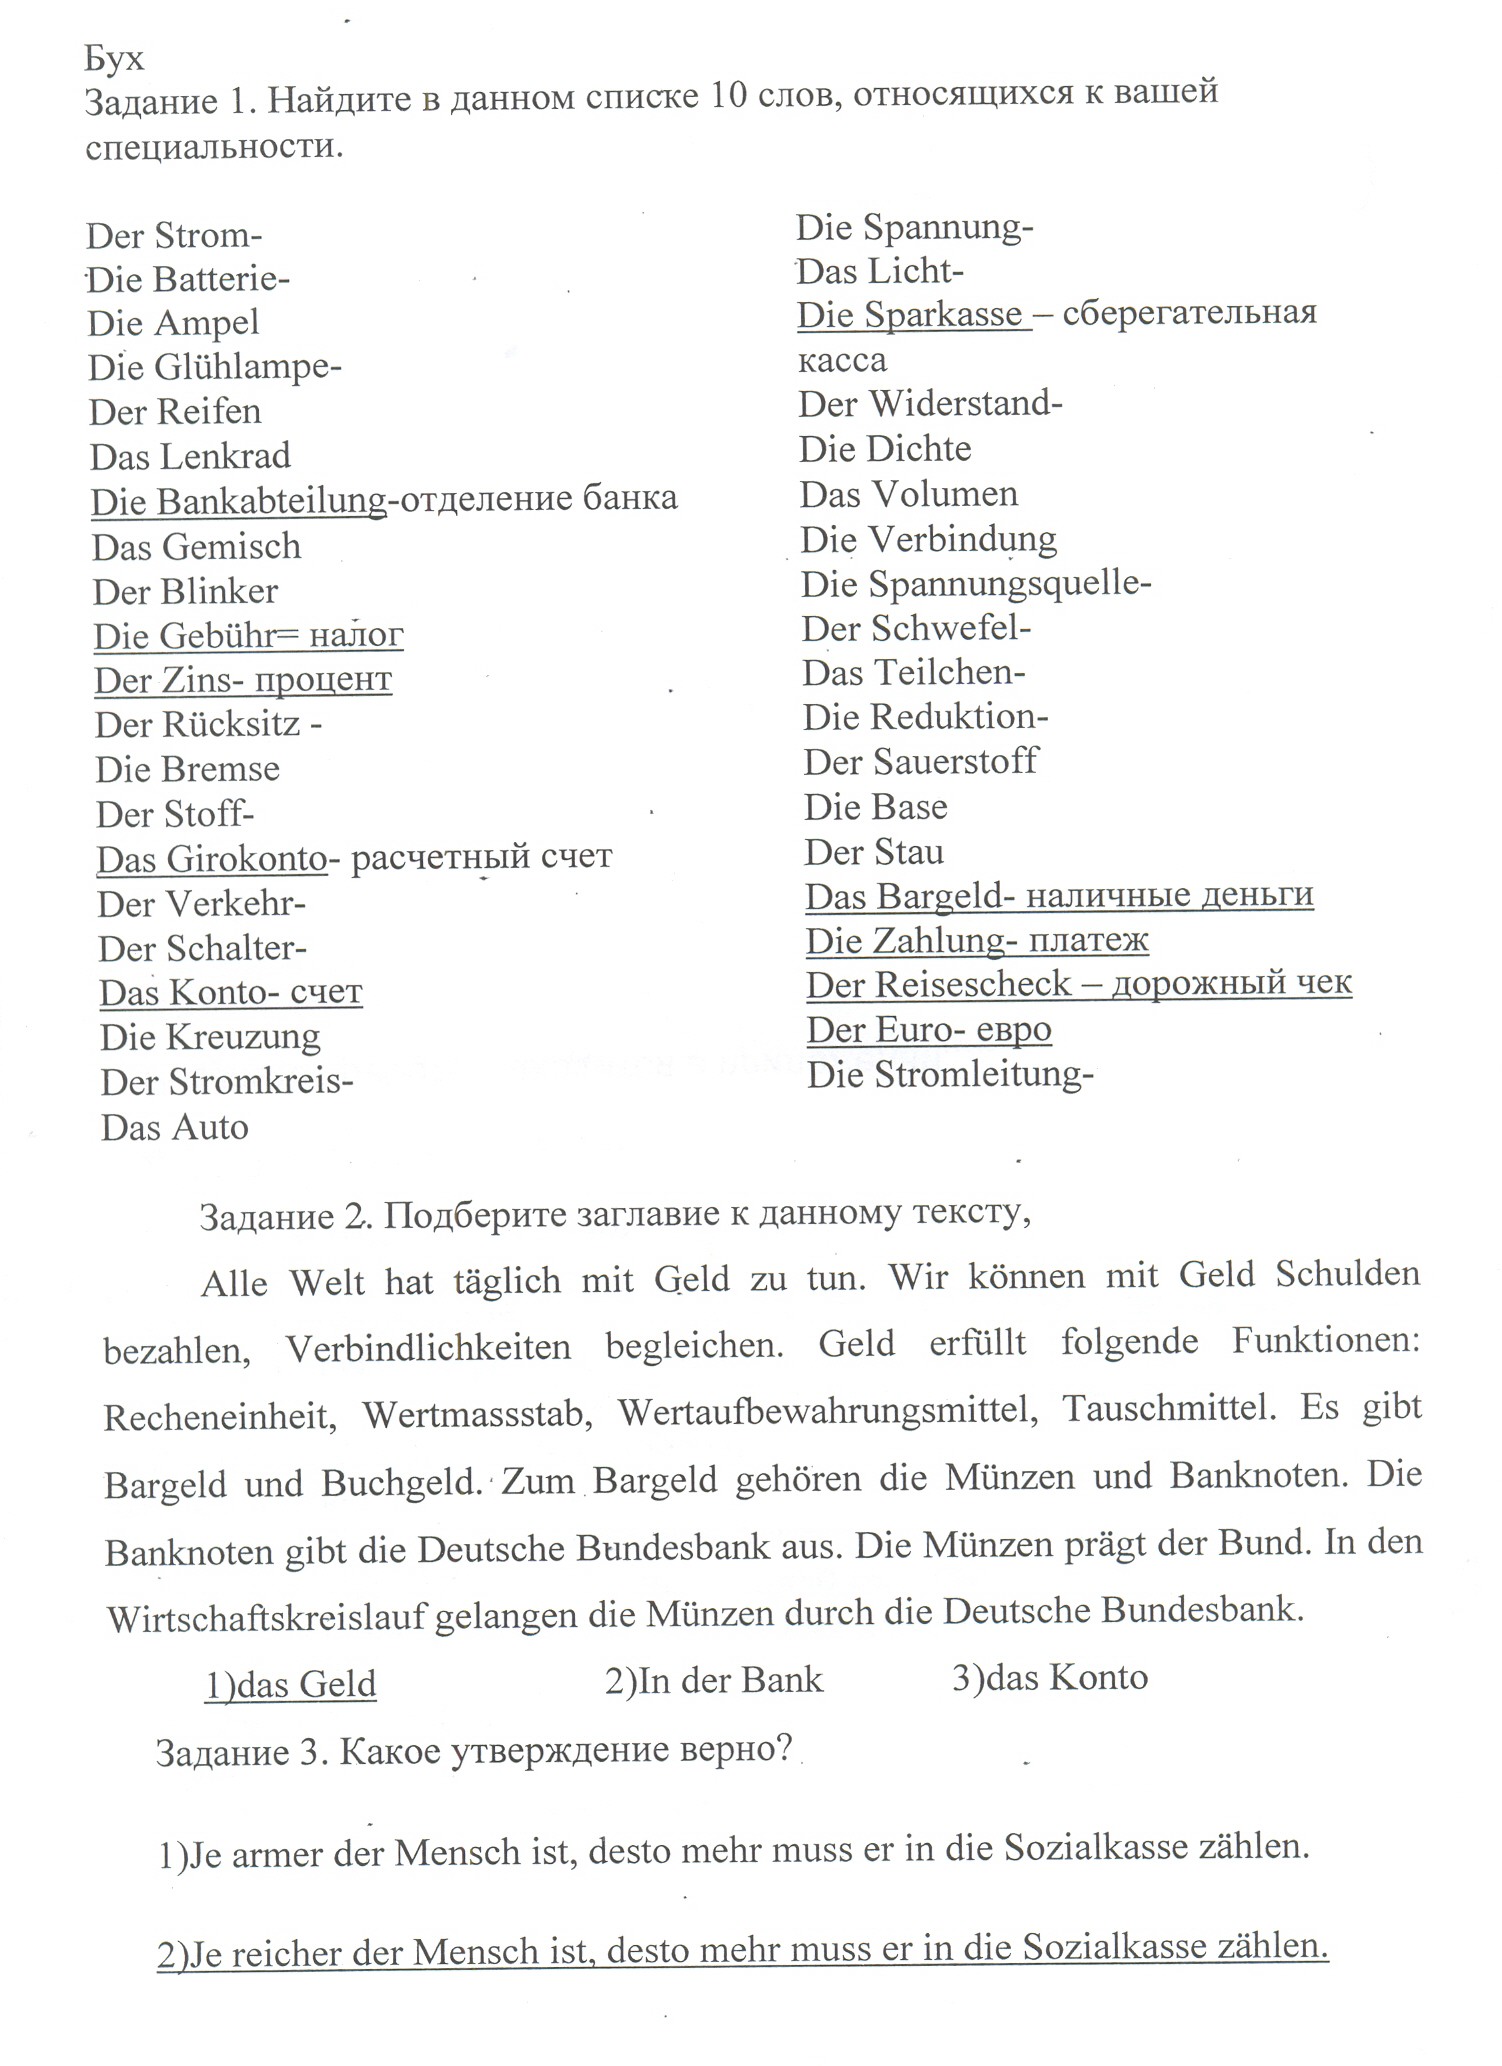 Конкурс знатоков немецкого языка